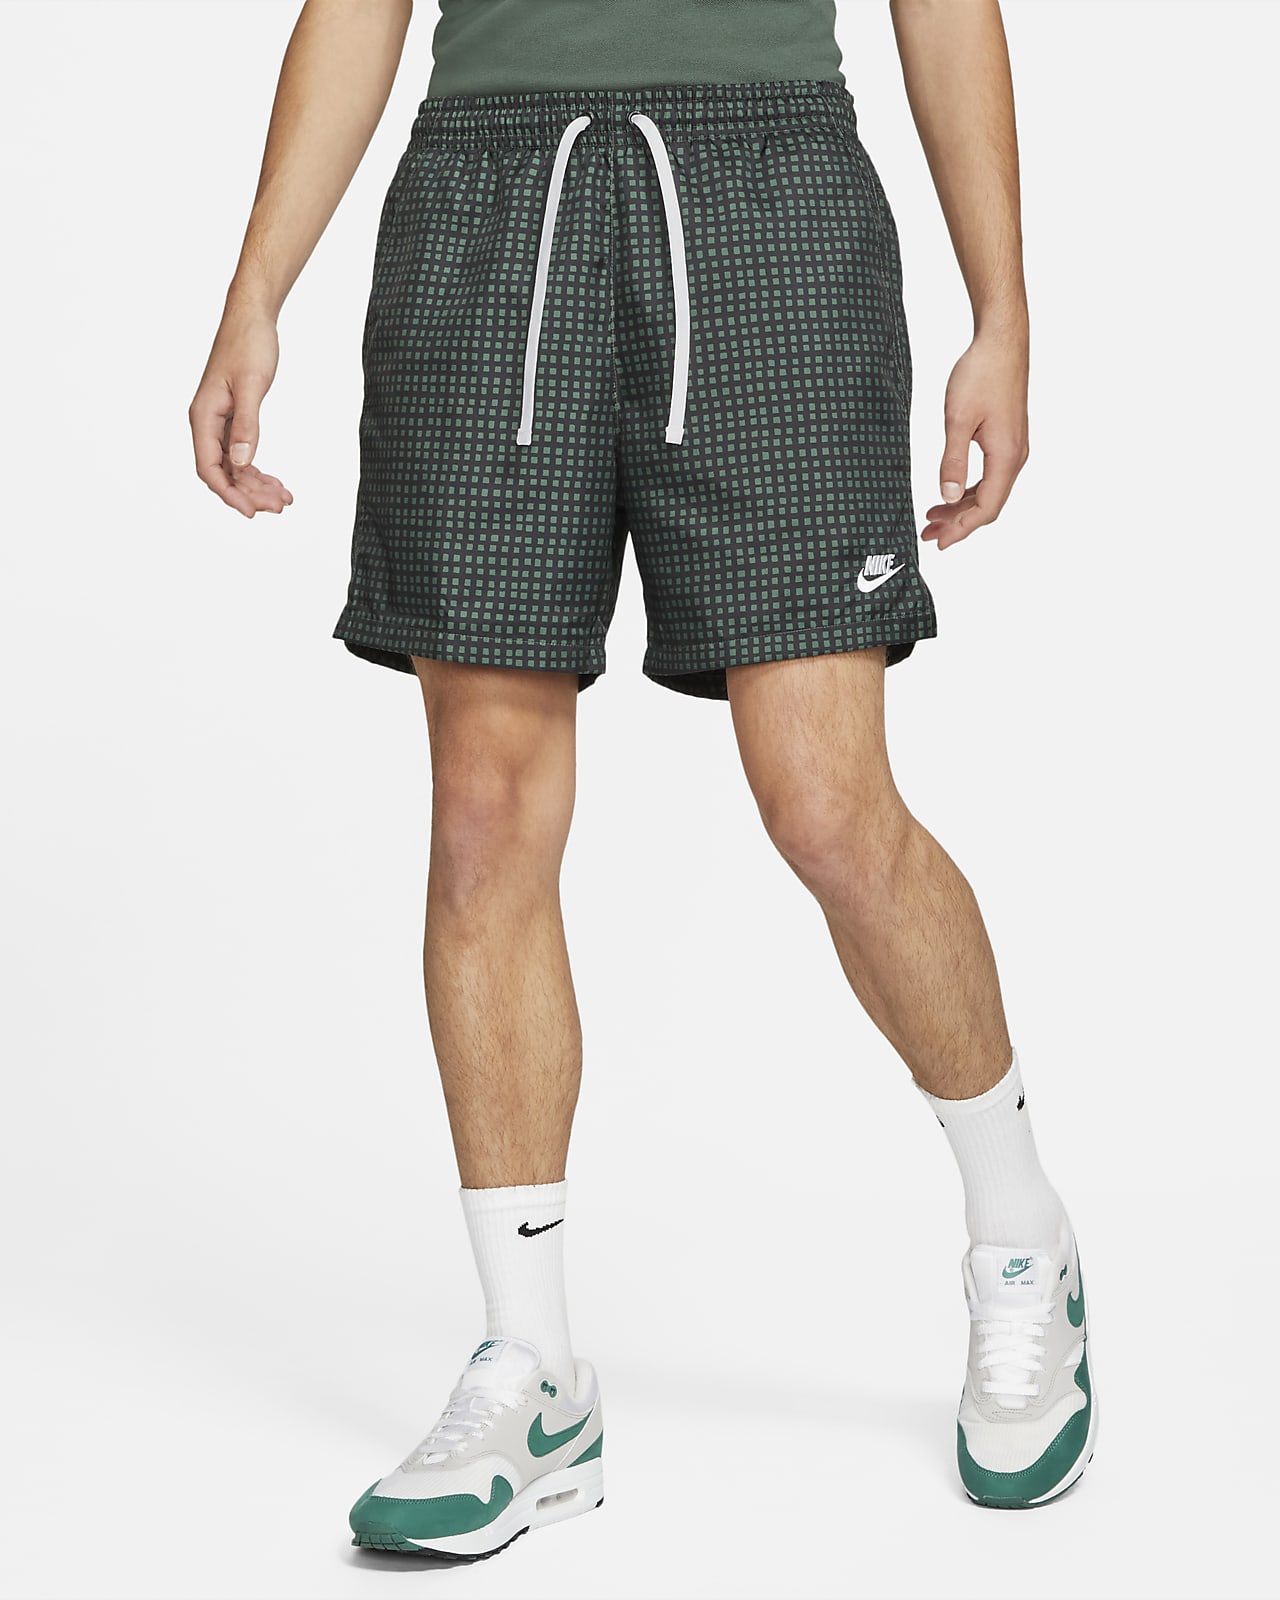 Шорты с подкладкой. Nike Woven Flow. Nike men's Woven Flow shorts. Nike Sportswear shorts Woven. Nike Woven NSW.